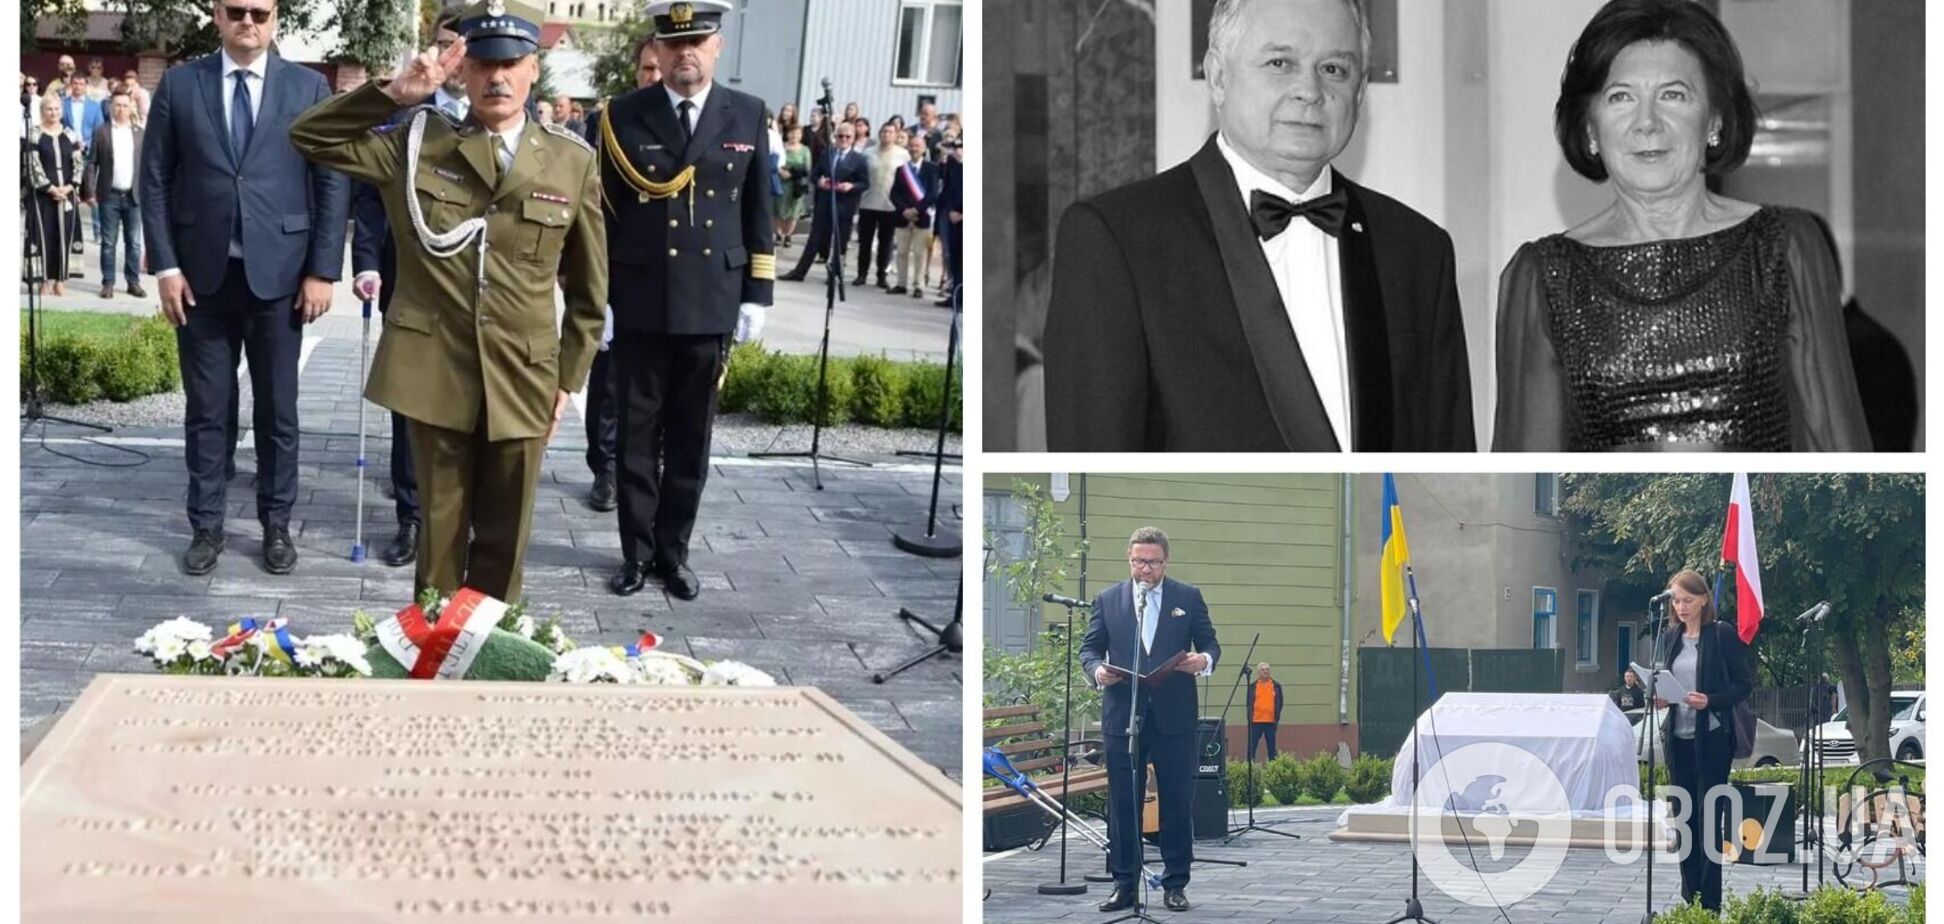 В Тернопольской области открыли сквер и памятный знак в честь президента Польши Леха Качиньского и его супруги. Фото